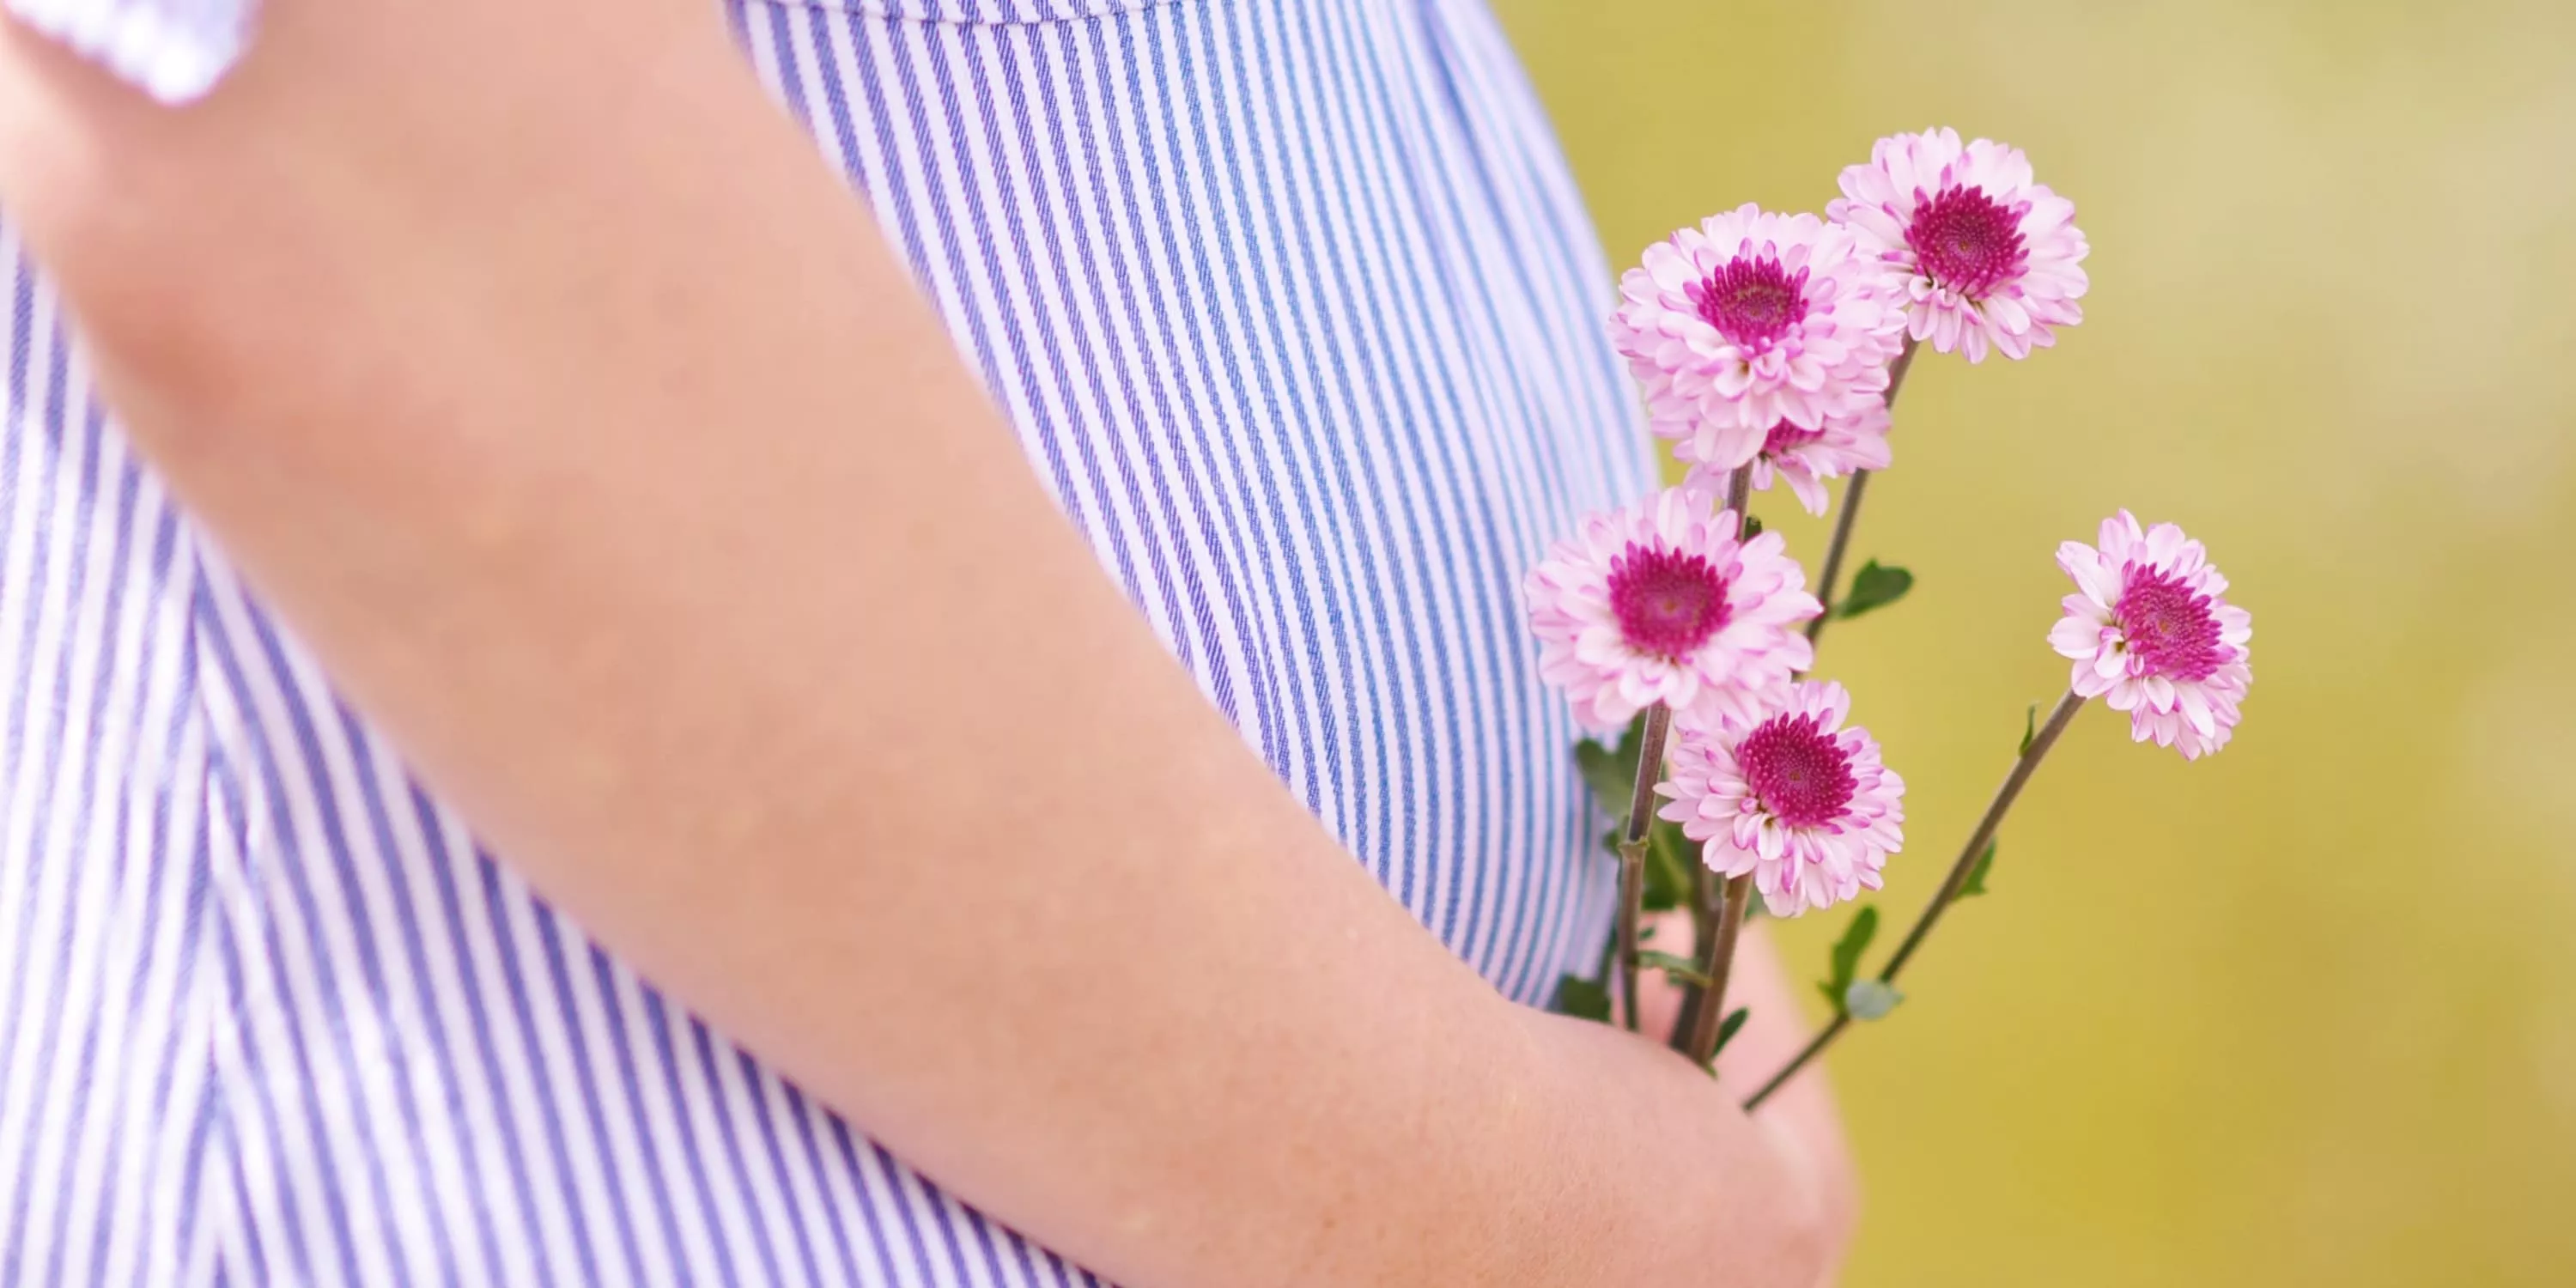 Dettaglio del pancione di una donna incinta che tiene in mano dei fiori